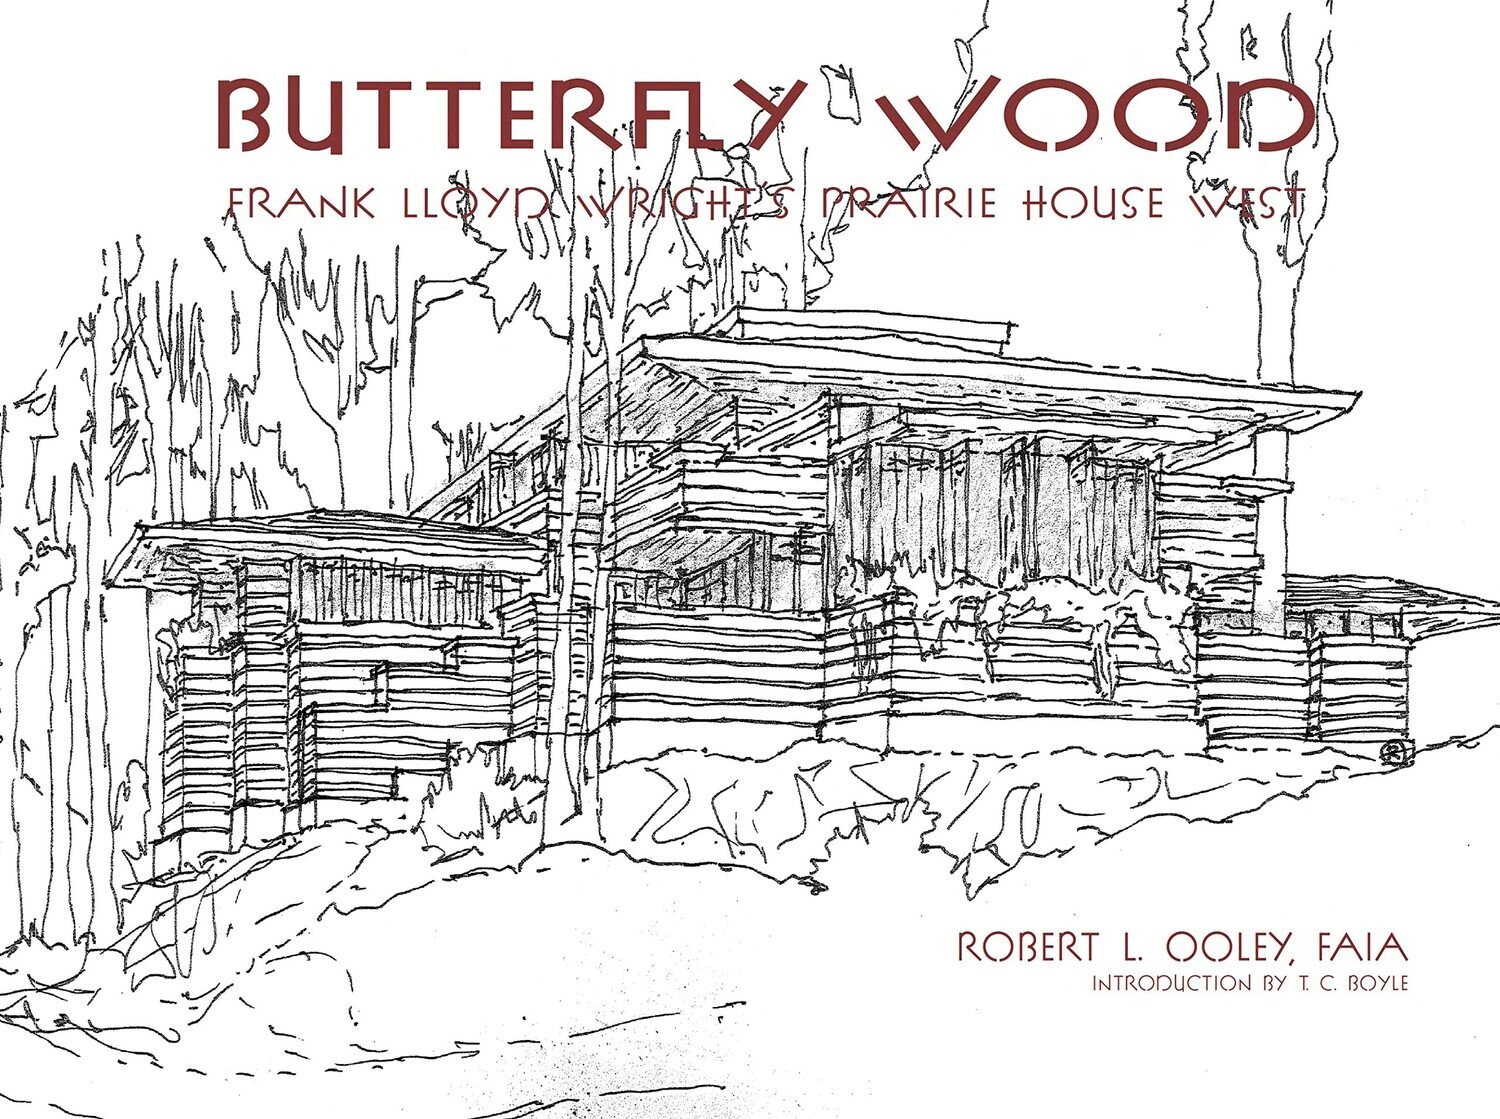 Butterfly Wood